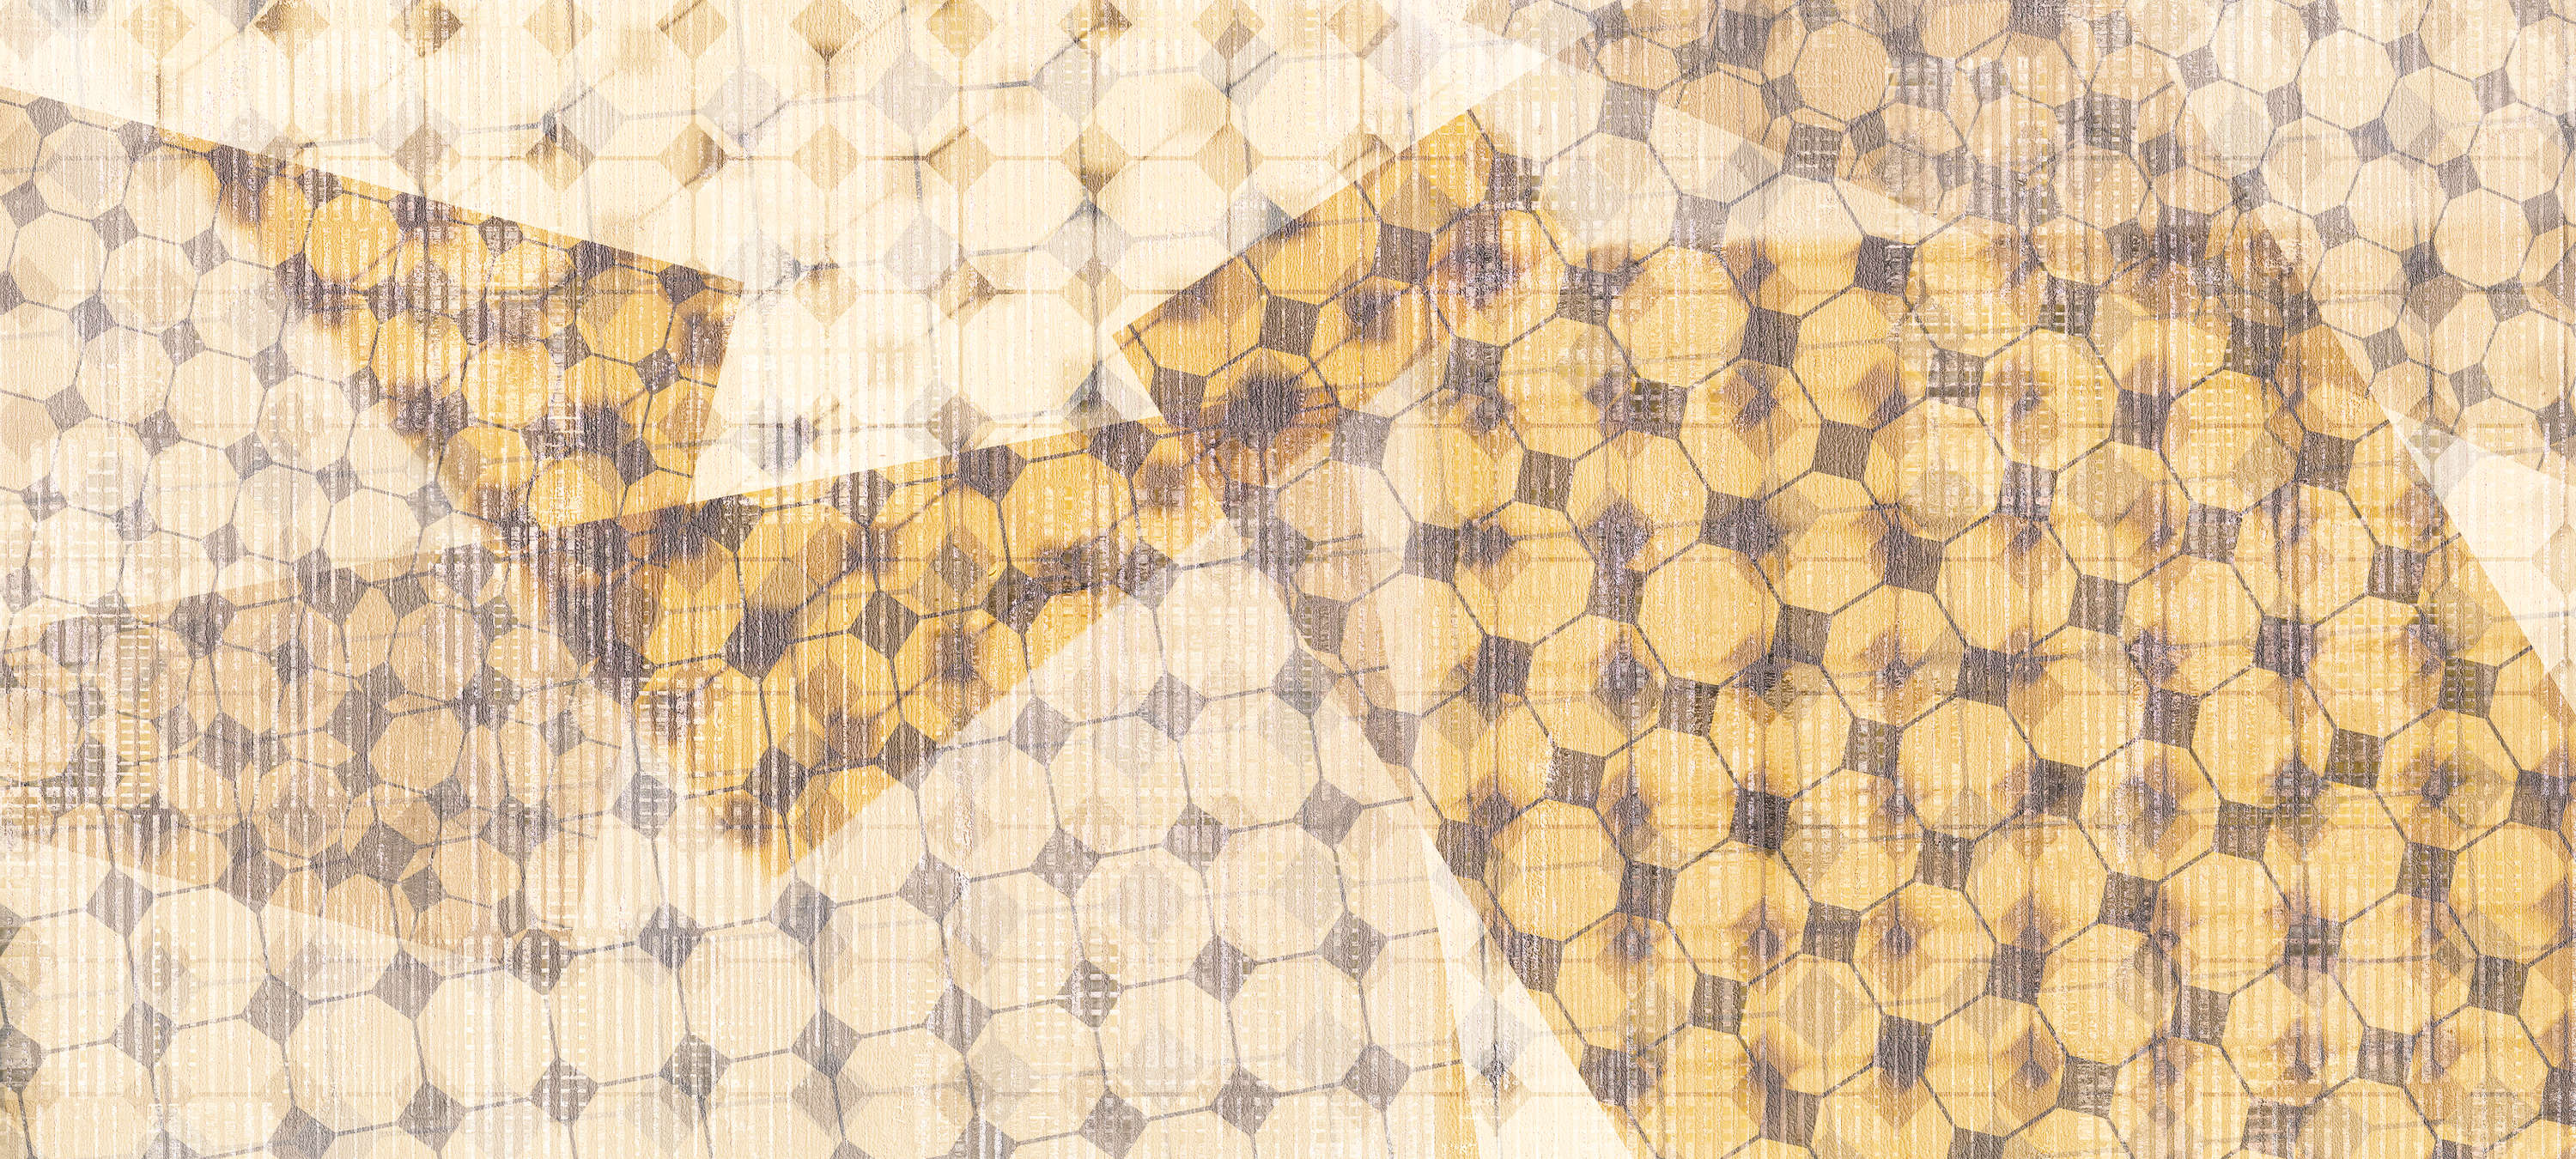             Fototapete mit Layer-Effekt & geometrischem Muster – Gelb, Orange, Weiß
        